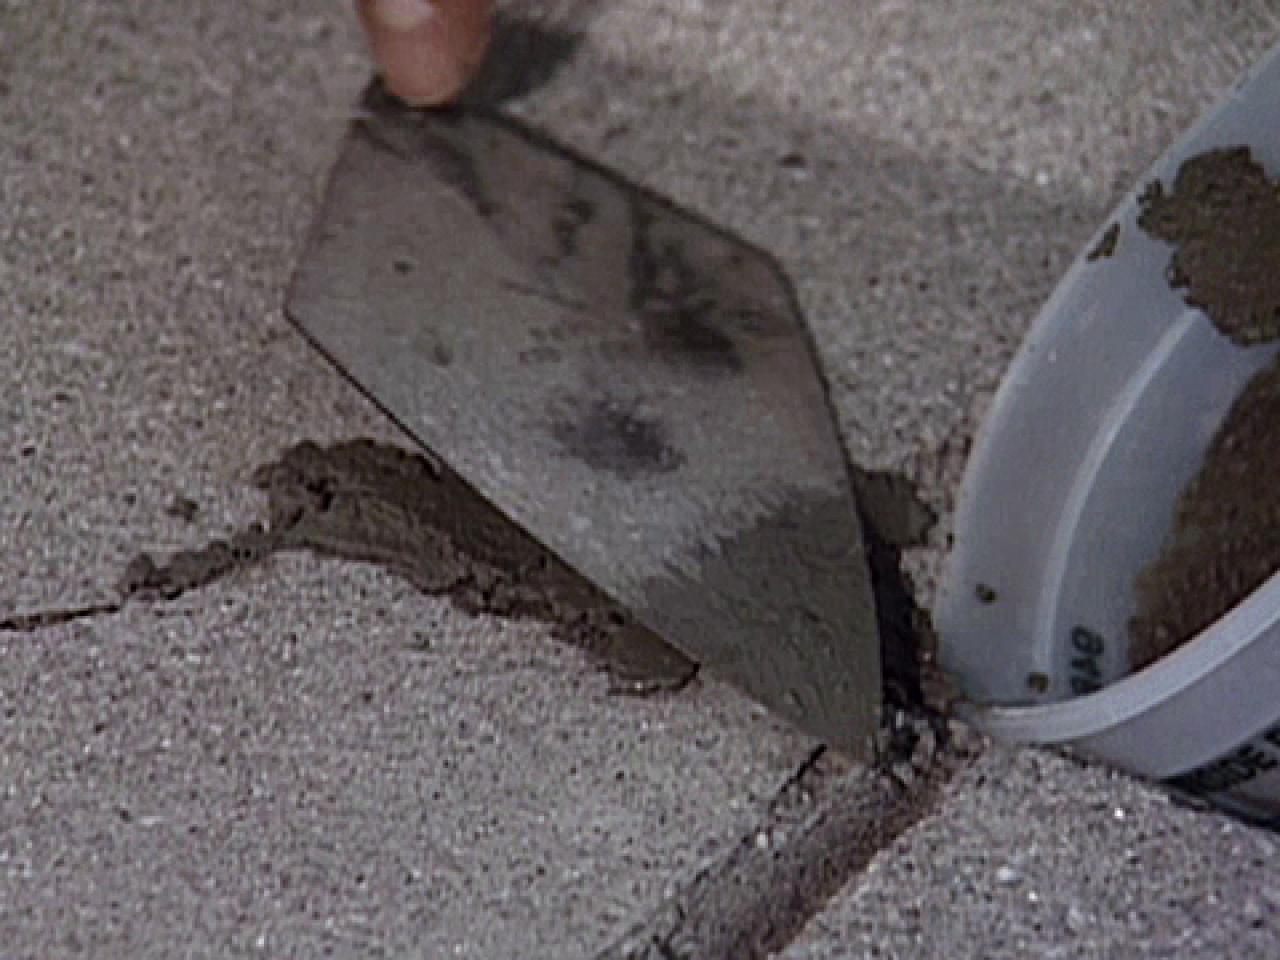 How to Repair Concrete | how-tos | DIY